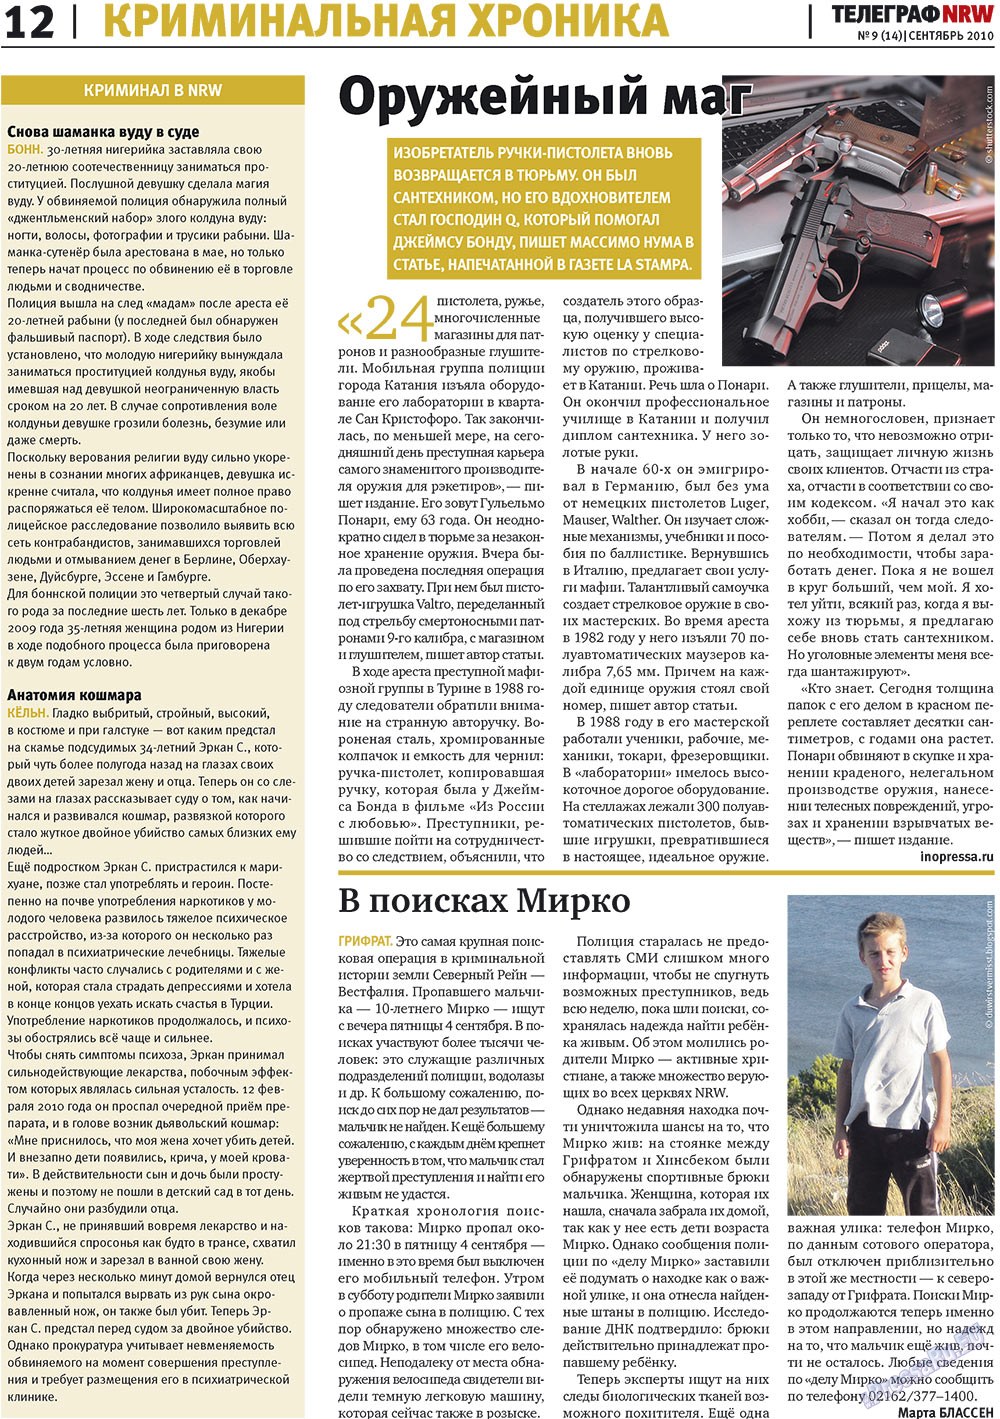 Телеграф NRW (газета). 2010 год, номер 9, стр. 12